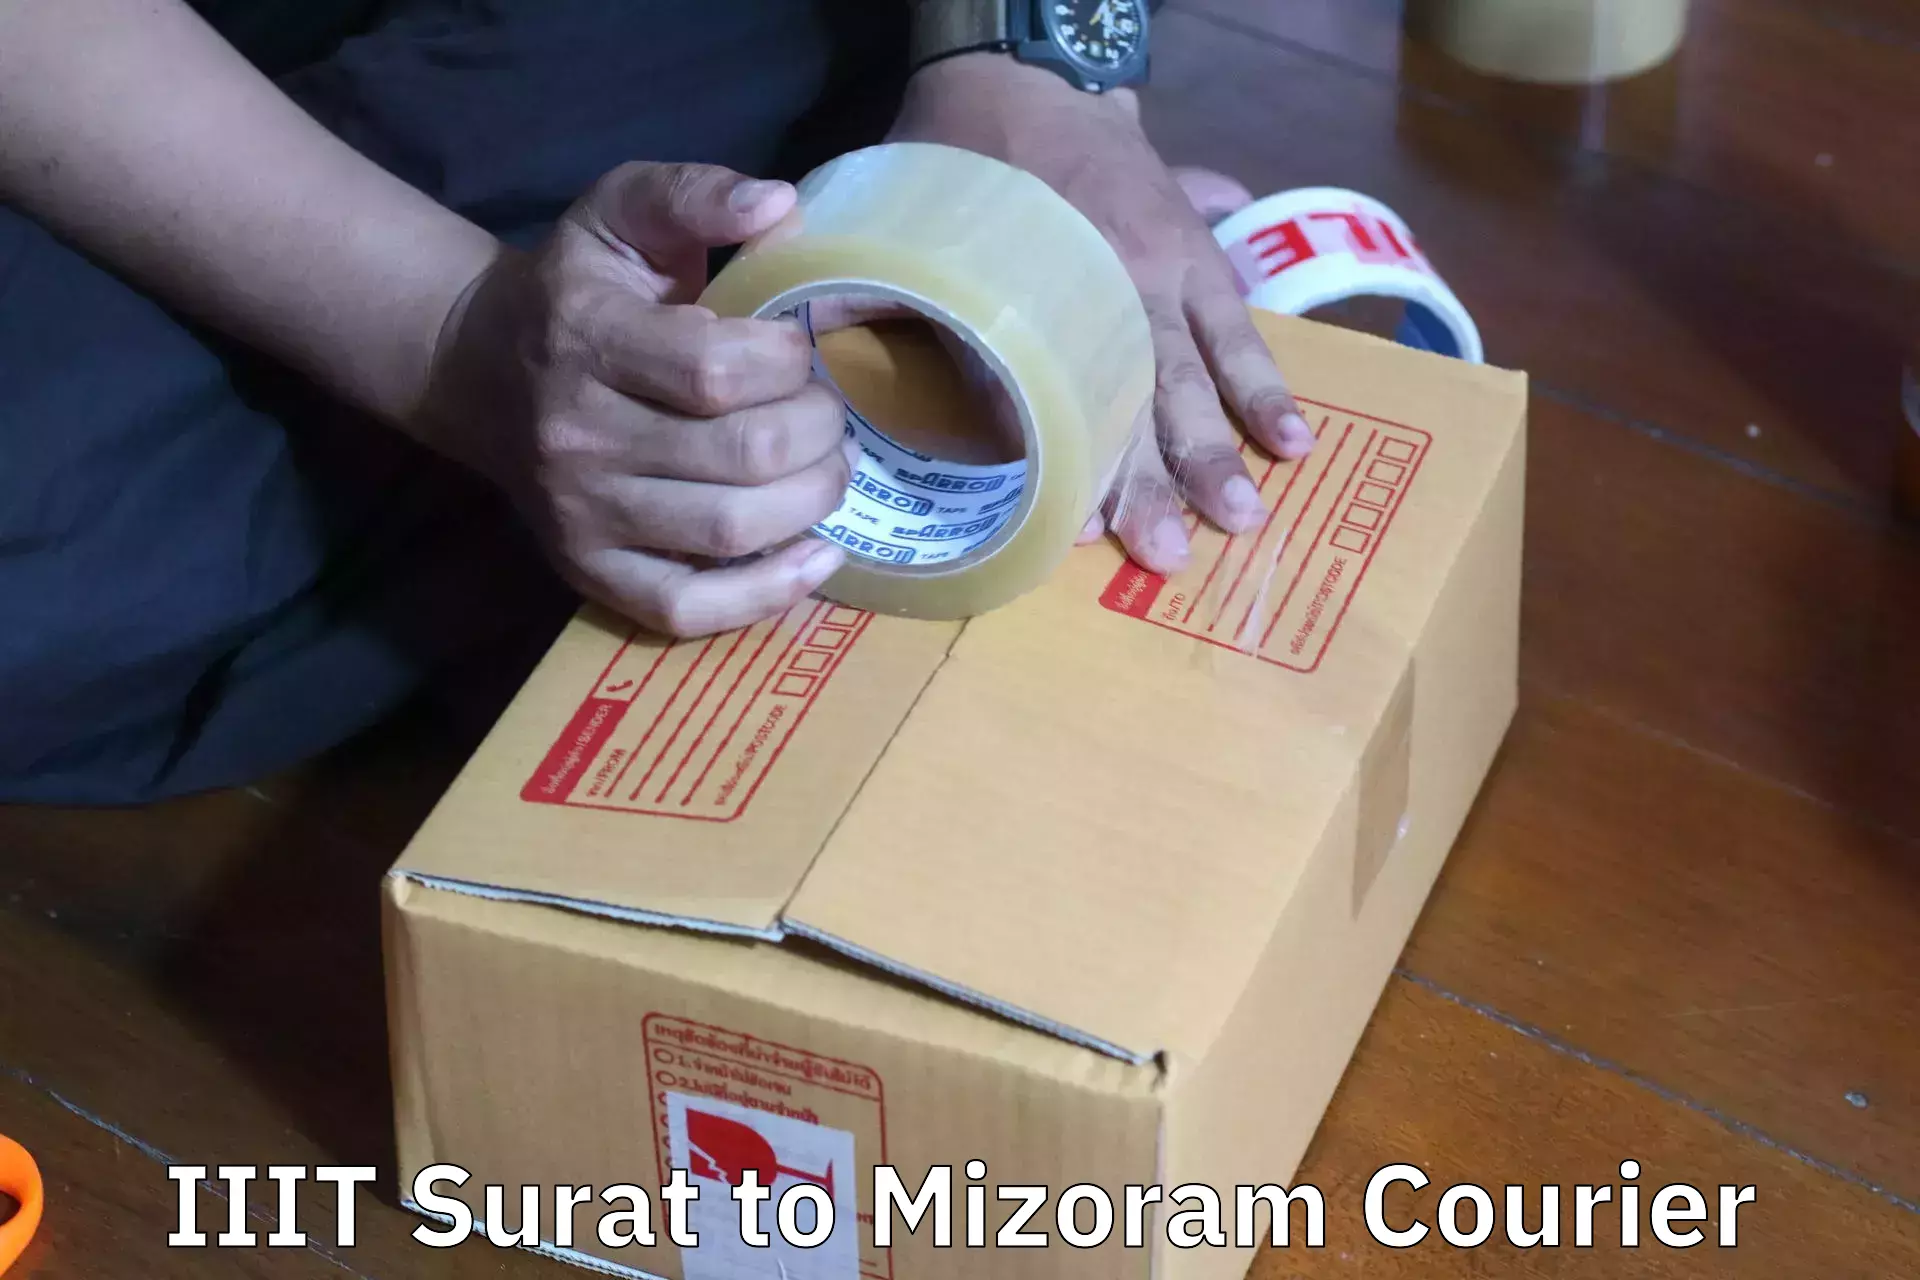 Furniture logistics IIIT Surat to Mizoram